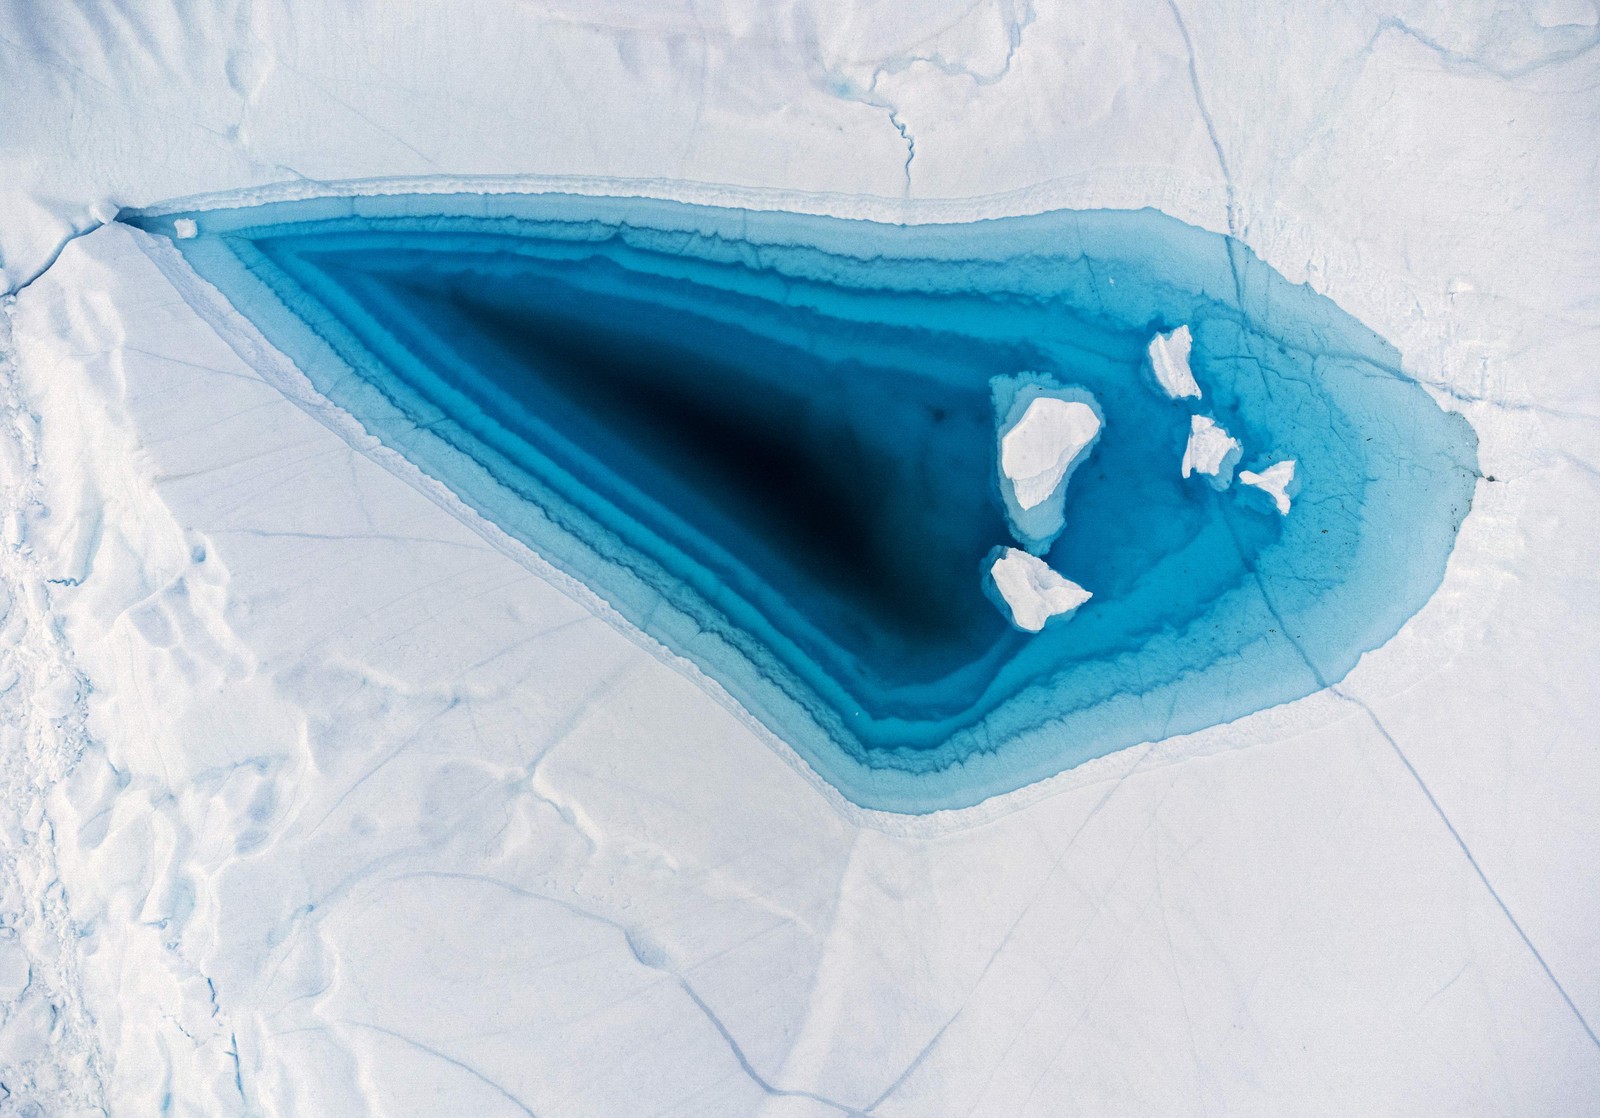 A água azul-turquesa é vista em um grande buraco de derretimento no topo de um iceberg na baía de Disko, Ilulissat, oeste da Groenlândia, em 29 de junho. — Foto: Odd ANDERSEN / AFP